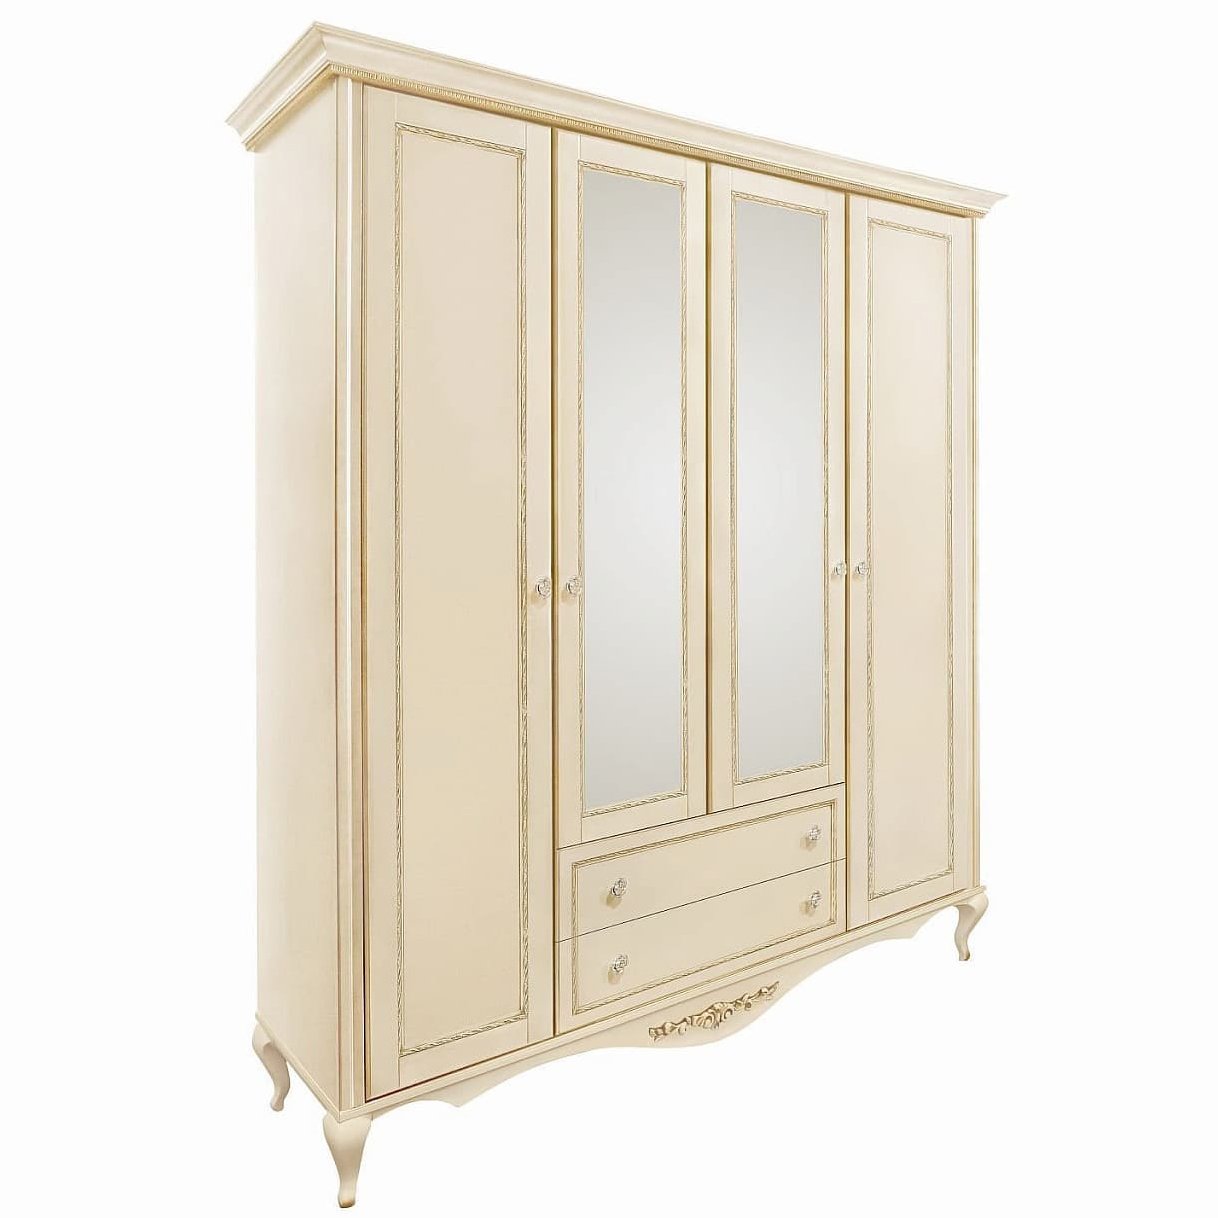 Шкаф платяной Timber Неаполь, 4-х дверный с зеркалами 204x65x227 см, цвет: ваниль с золотом (Т-524/VO)Т-524